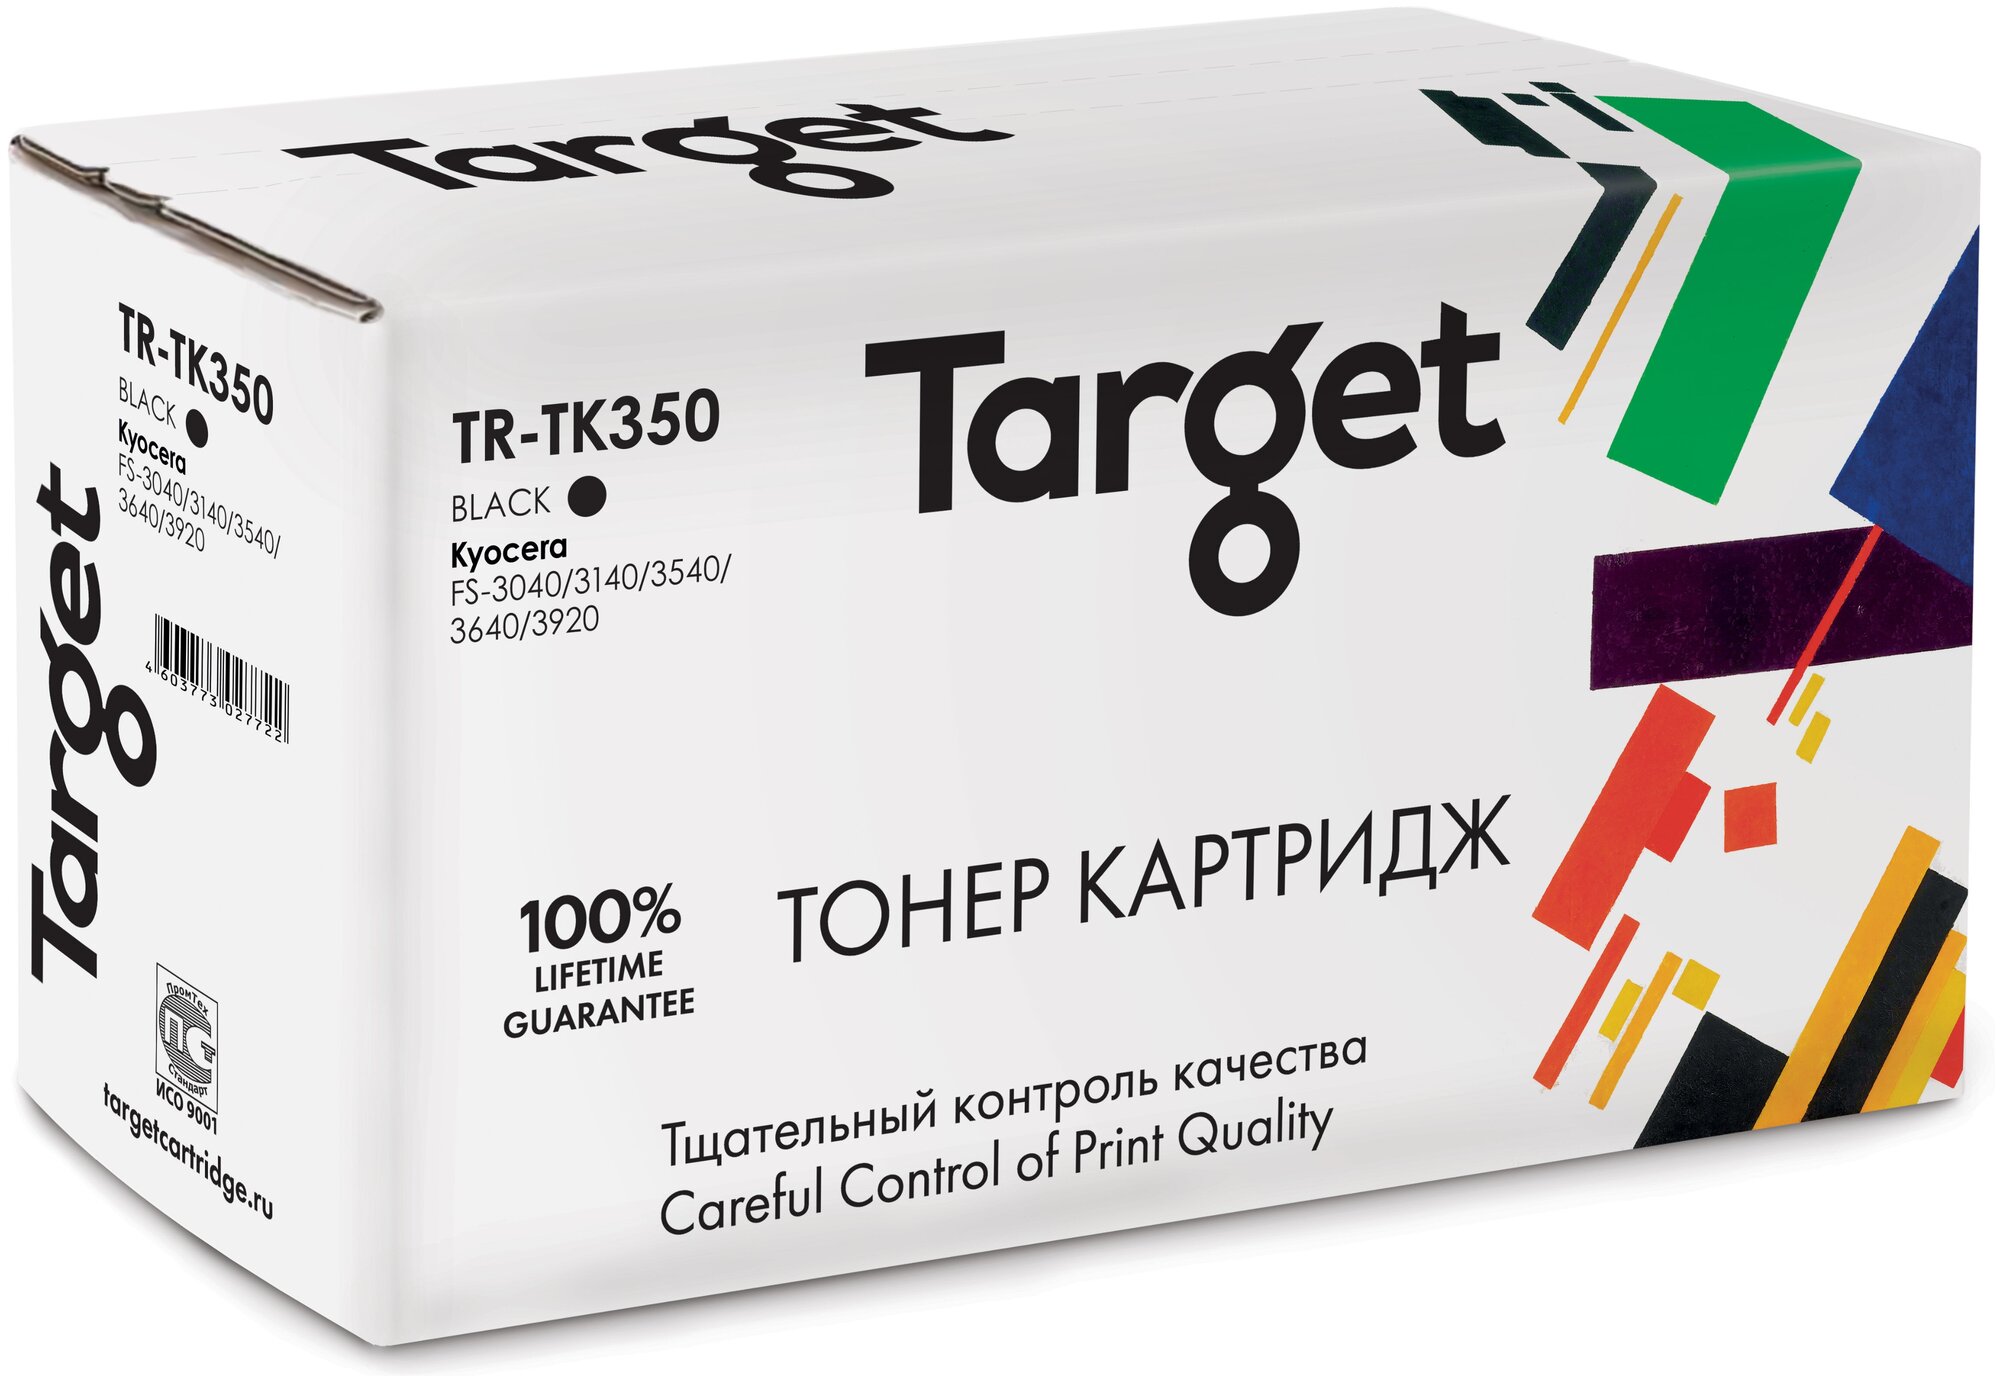 Тонер-картридж Target TK350, черный, для лазерного принтера, совместимый